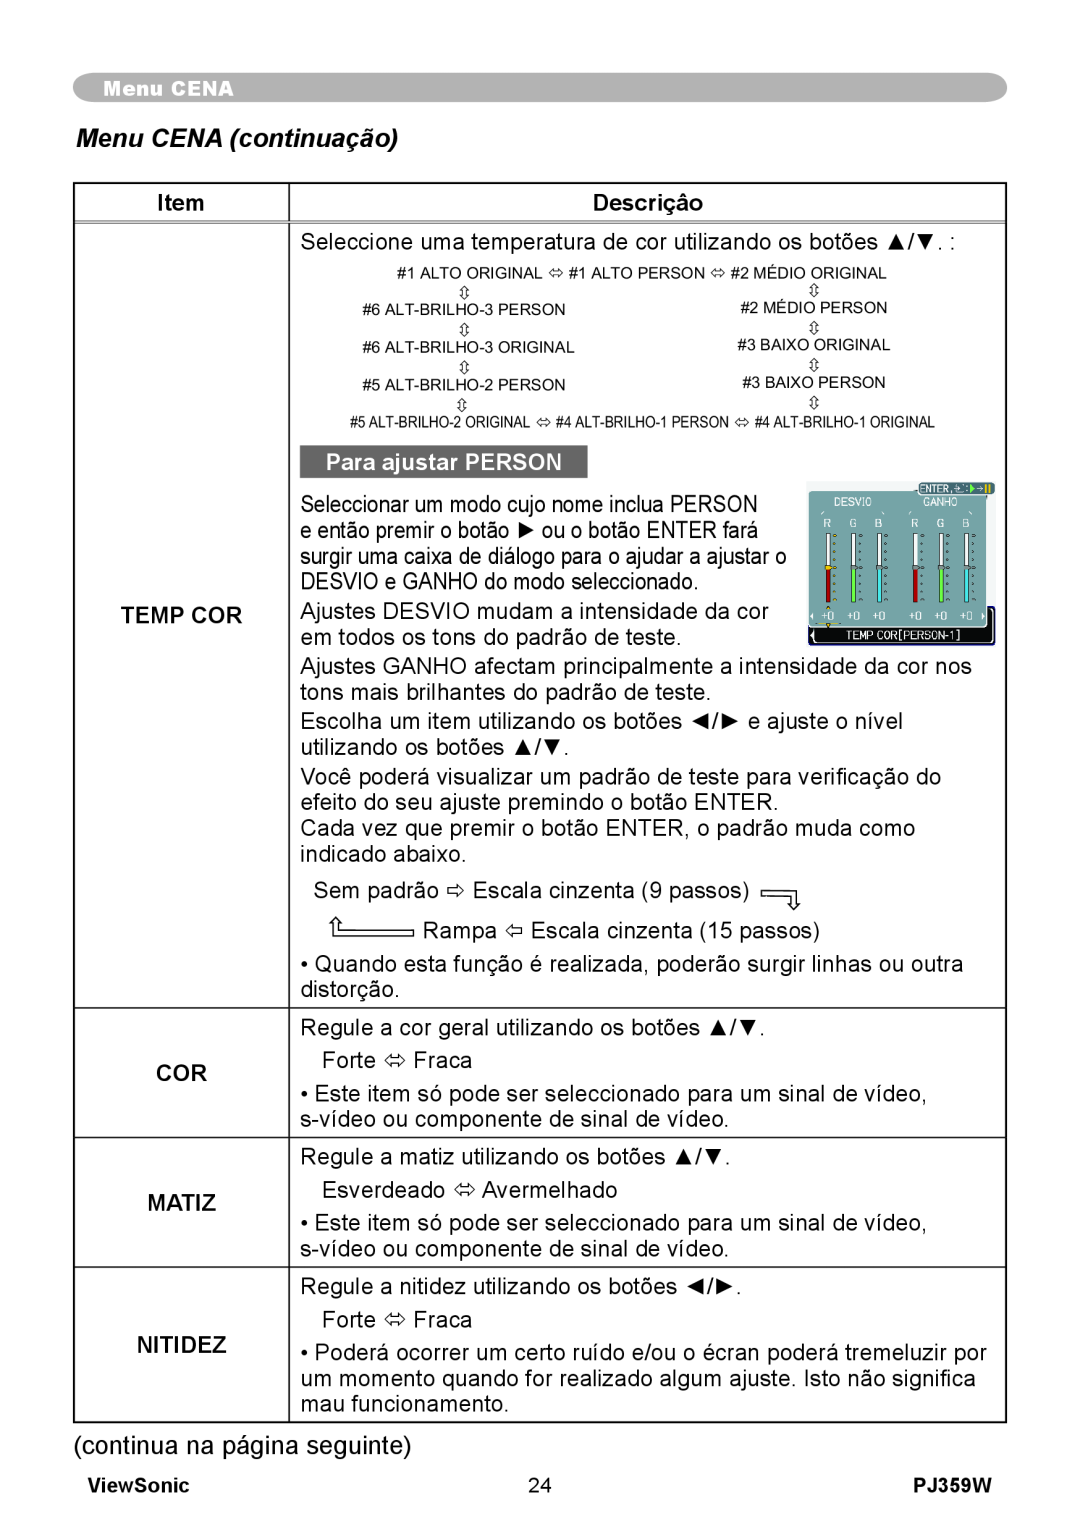 ViewSonic PJ359 manual Menu CENA continuação, Descriçâo, Para ajustar PERSON, Temp Cor, Matiz, Nitidez 